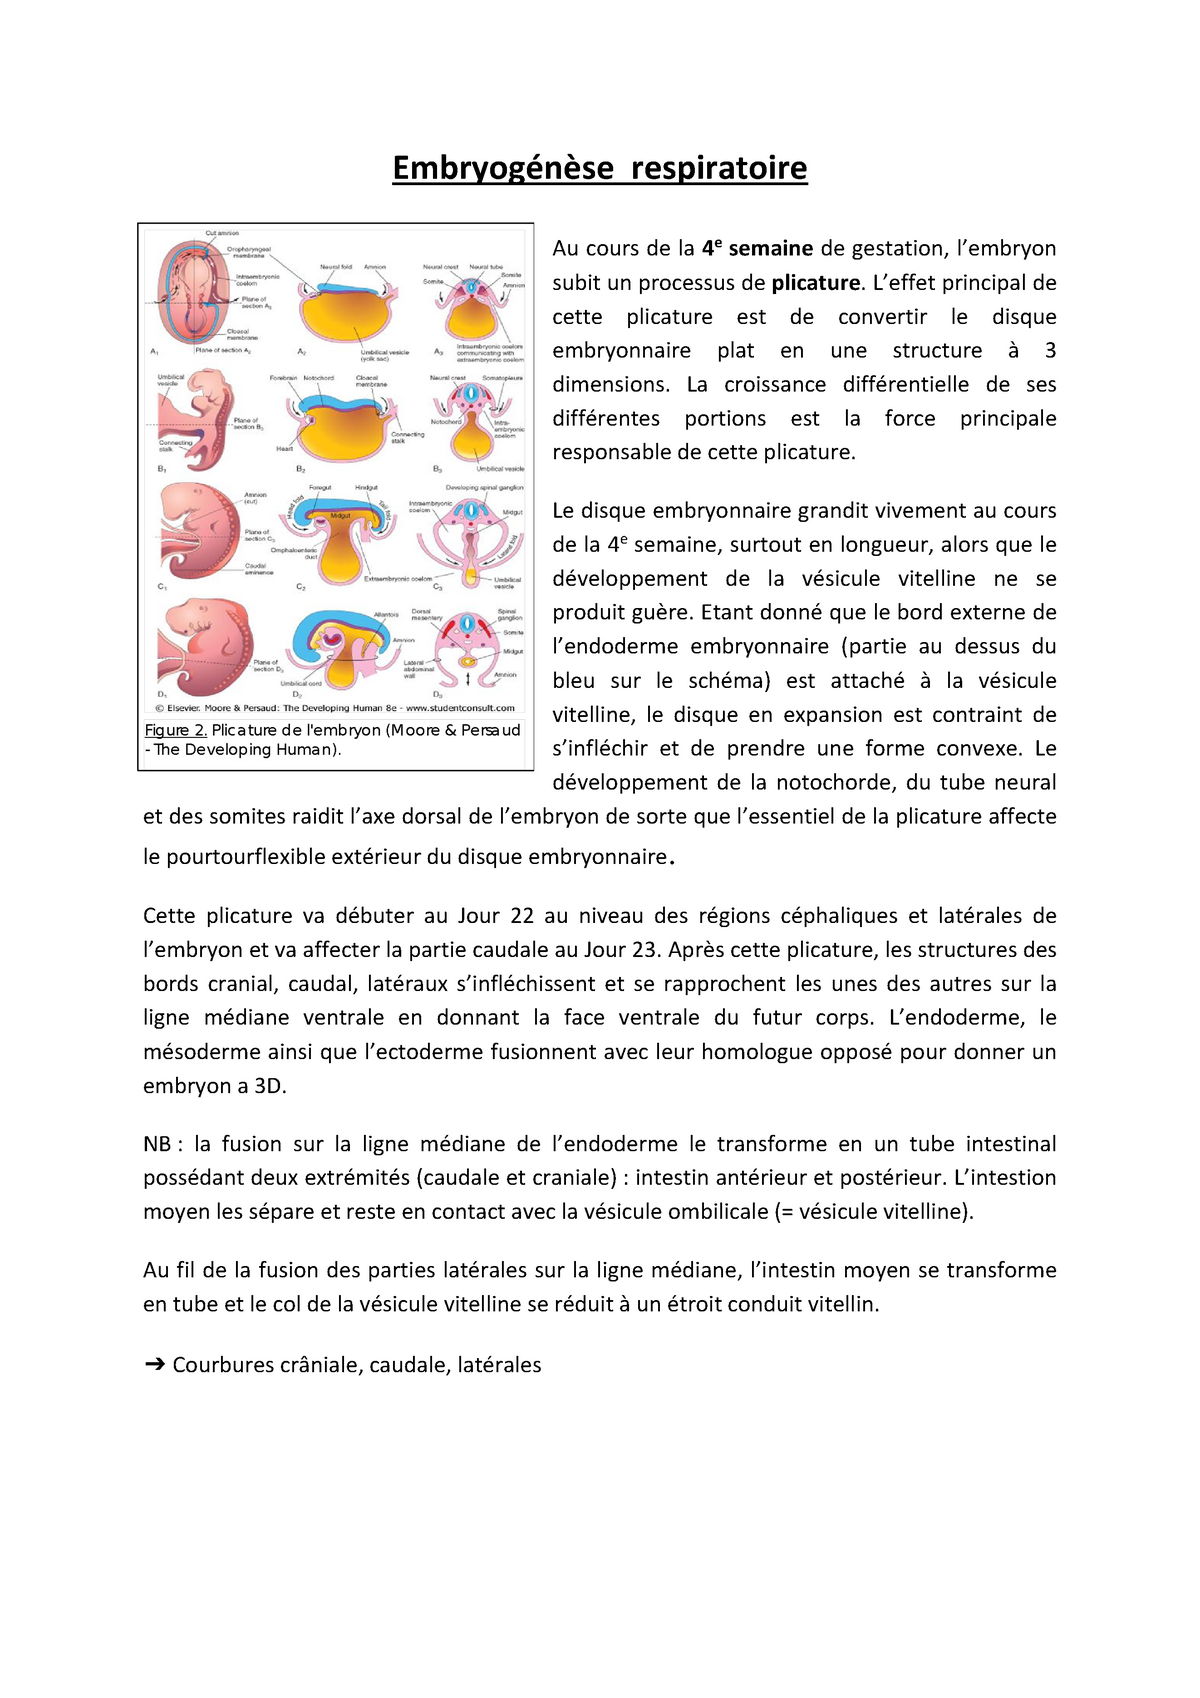 Les membranes fœtales : développement embryologique, structure et  physiopathologie de la rupture prématurée avant terme - ScienceDirect